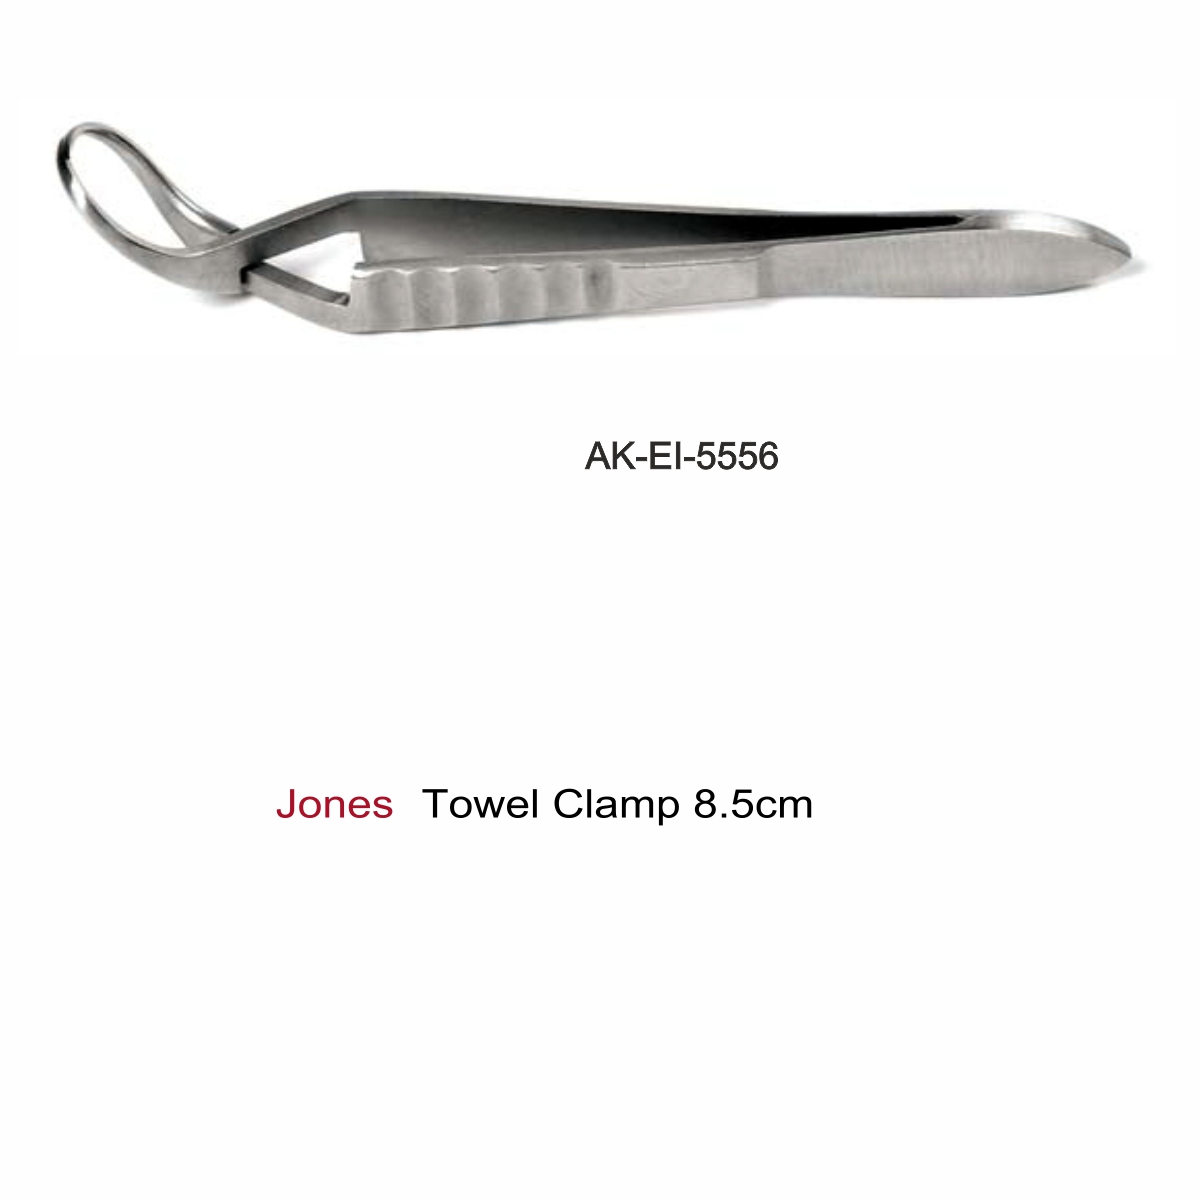 Jones Towel Clamp